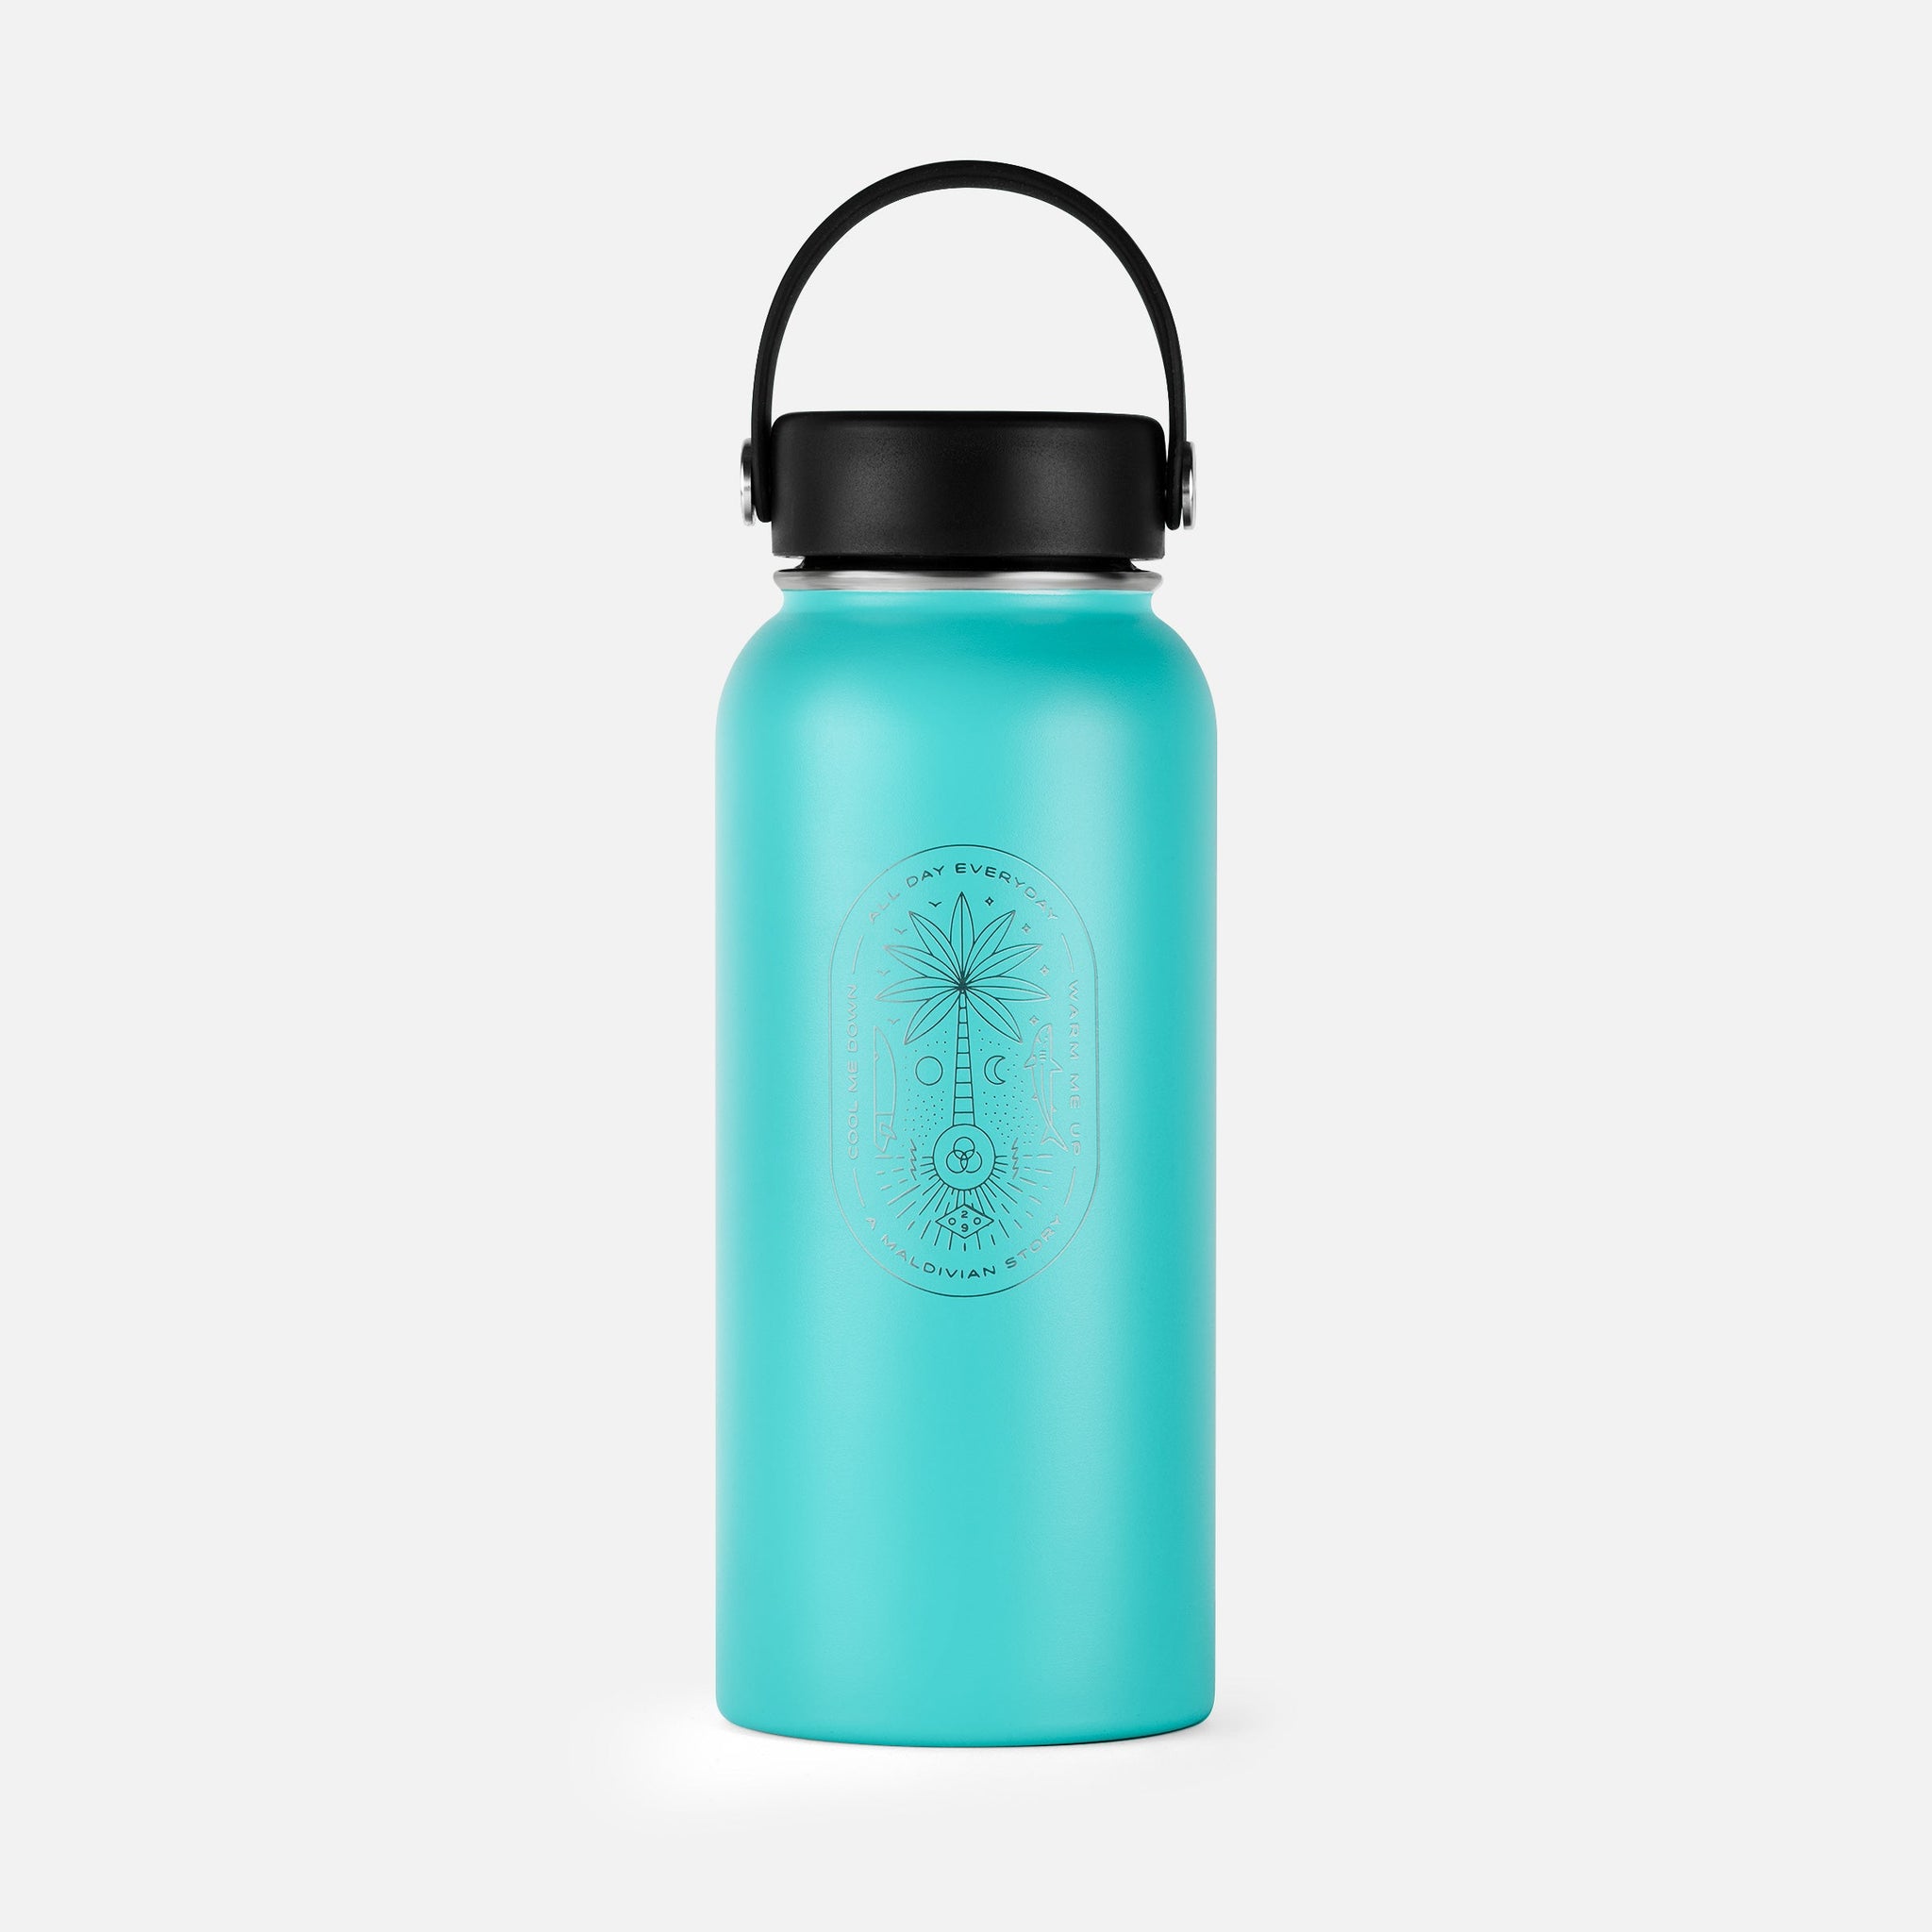 Reusable Flask - 1000ml - Teal - Toddy Inc